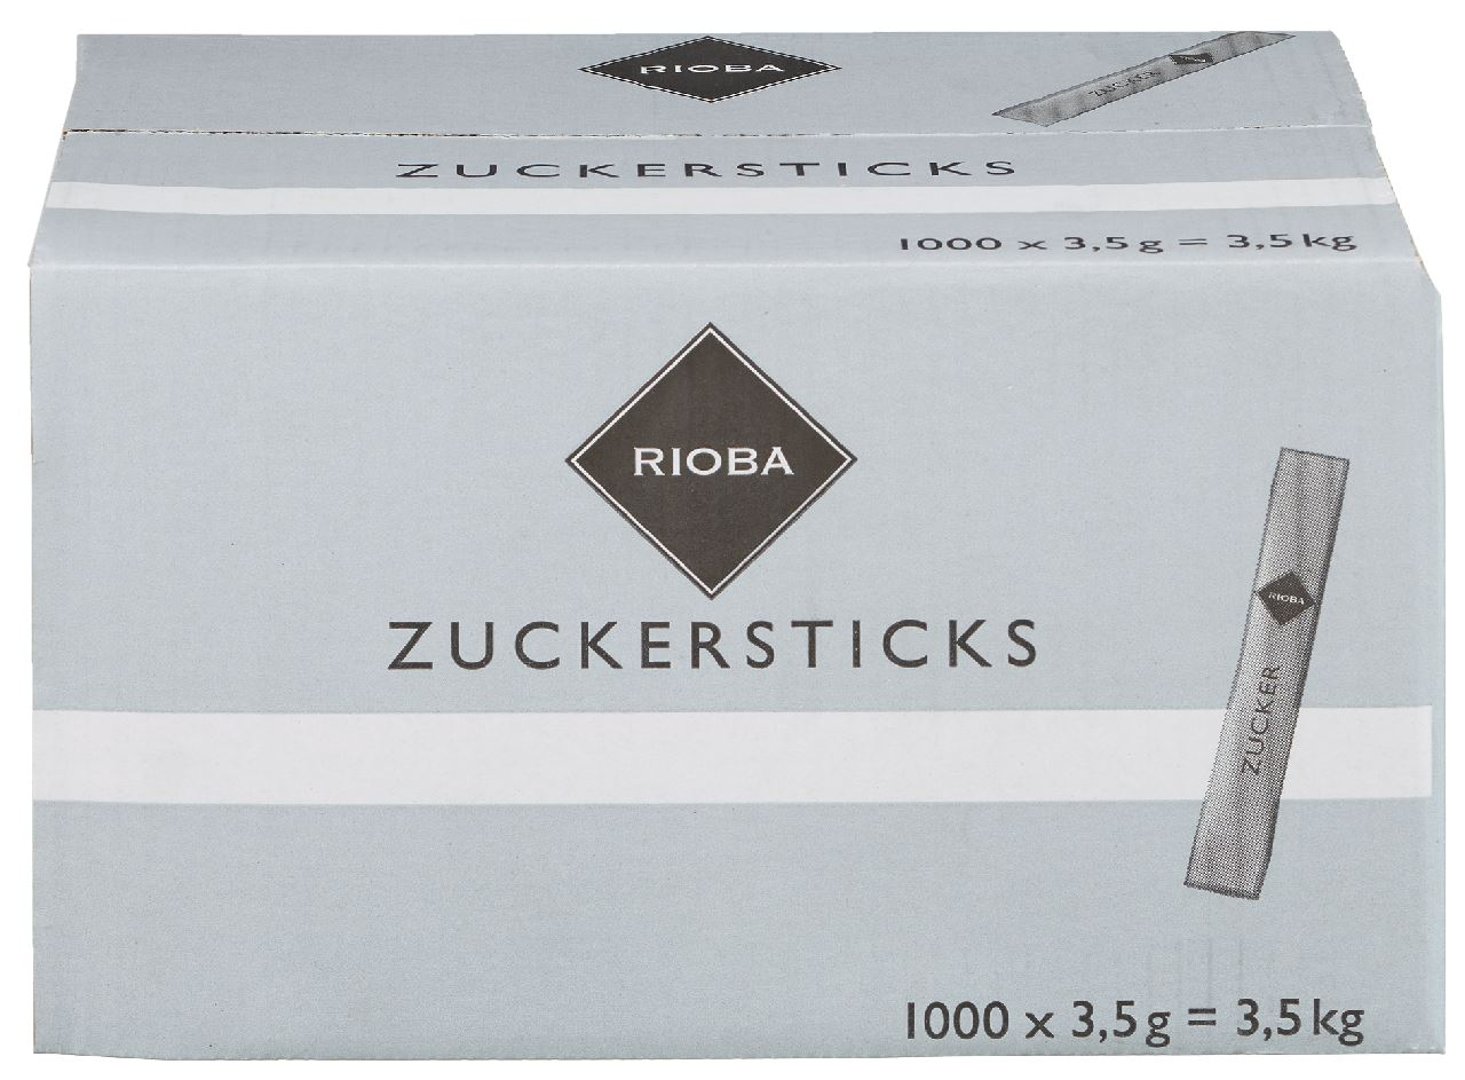 RIOBA - Zuckersticks Einzelportionen 1000 Stück à 3,5 g - 3,5 kg Karton